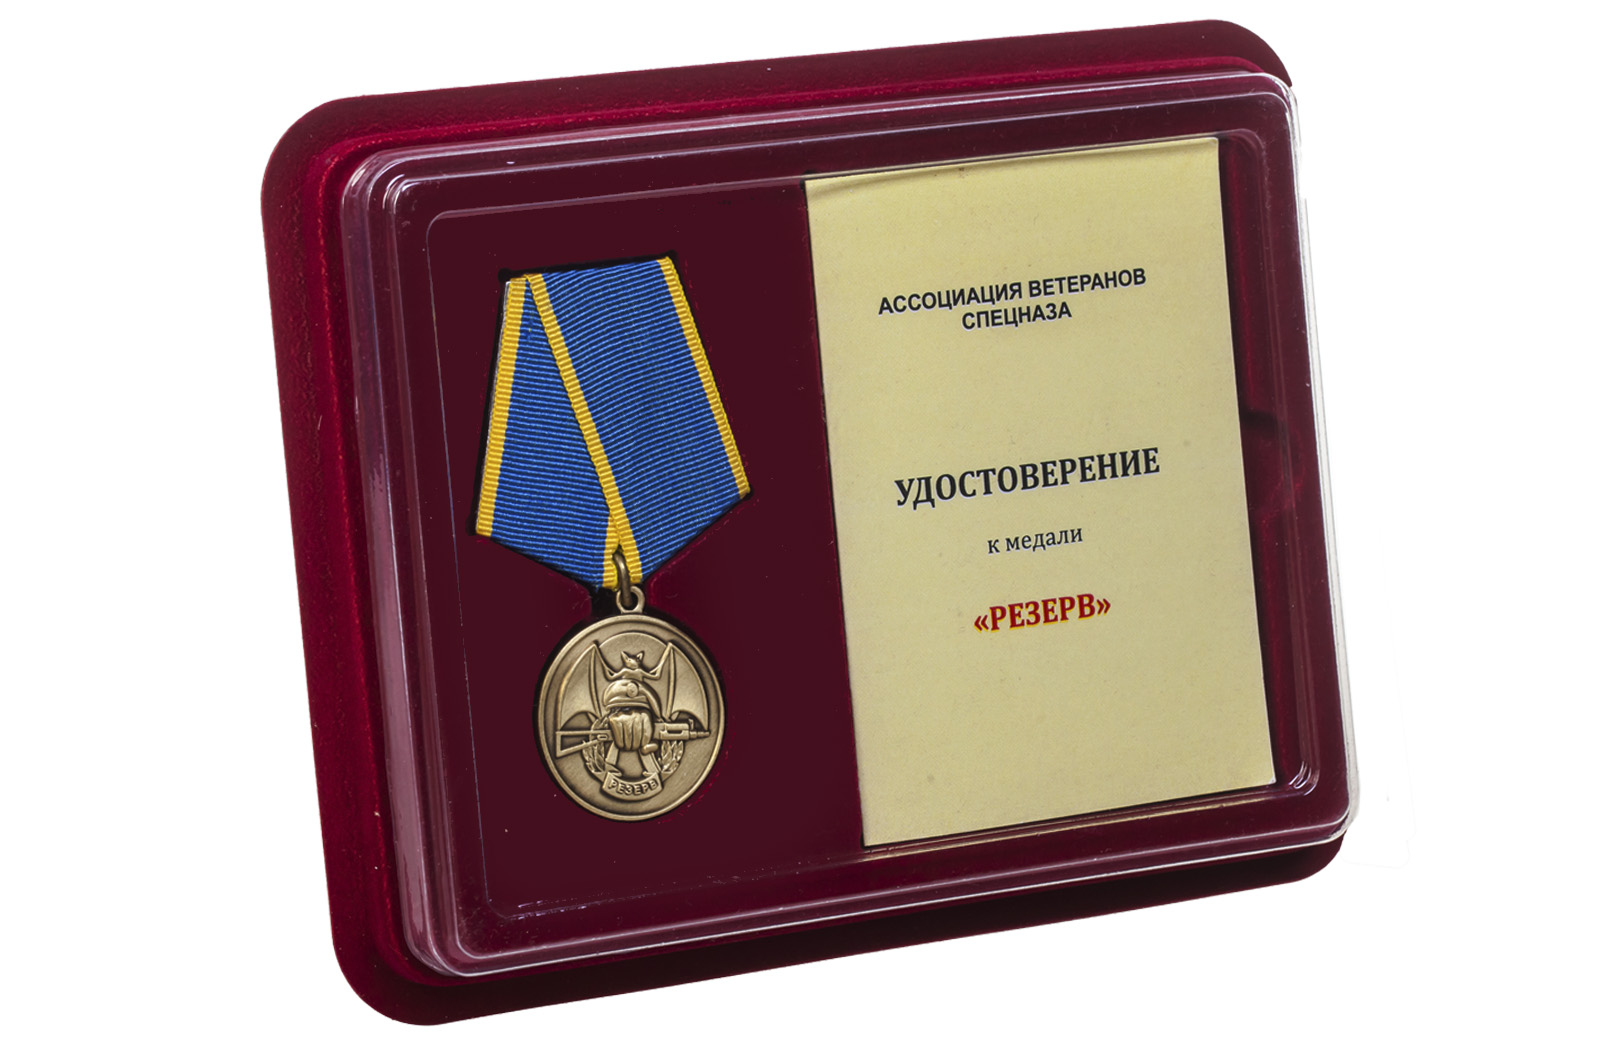 Купить общественную медаль «Резерв» Ассоциация ветеранов спецназа в подарок